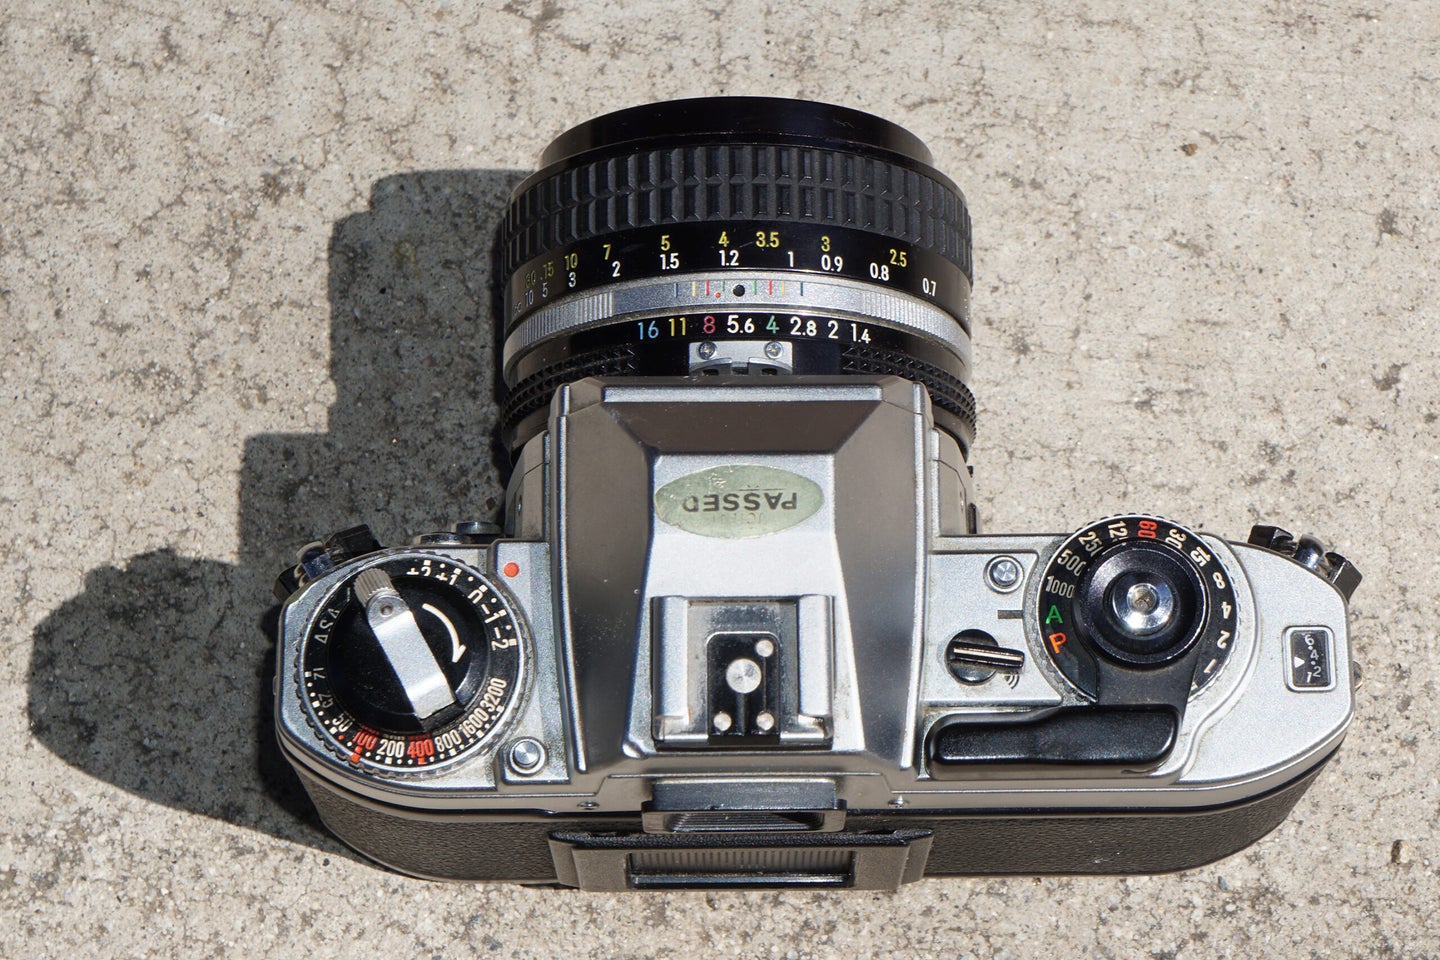 Nikon FG film camera review